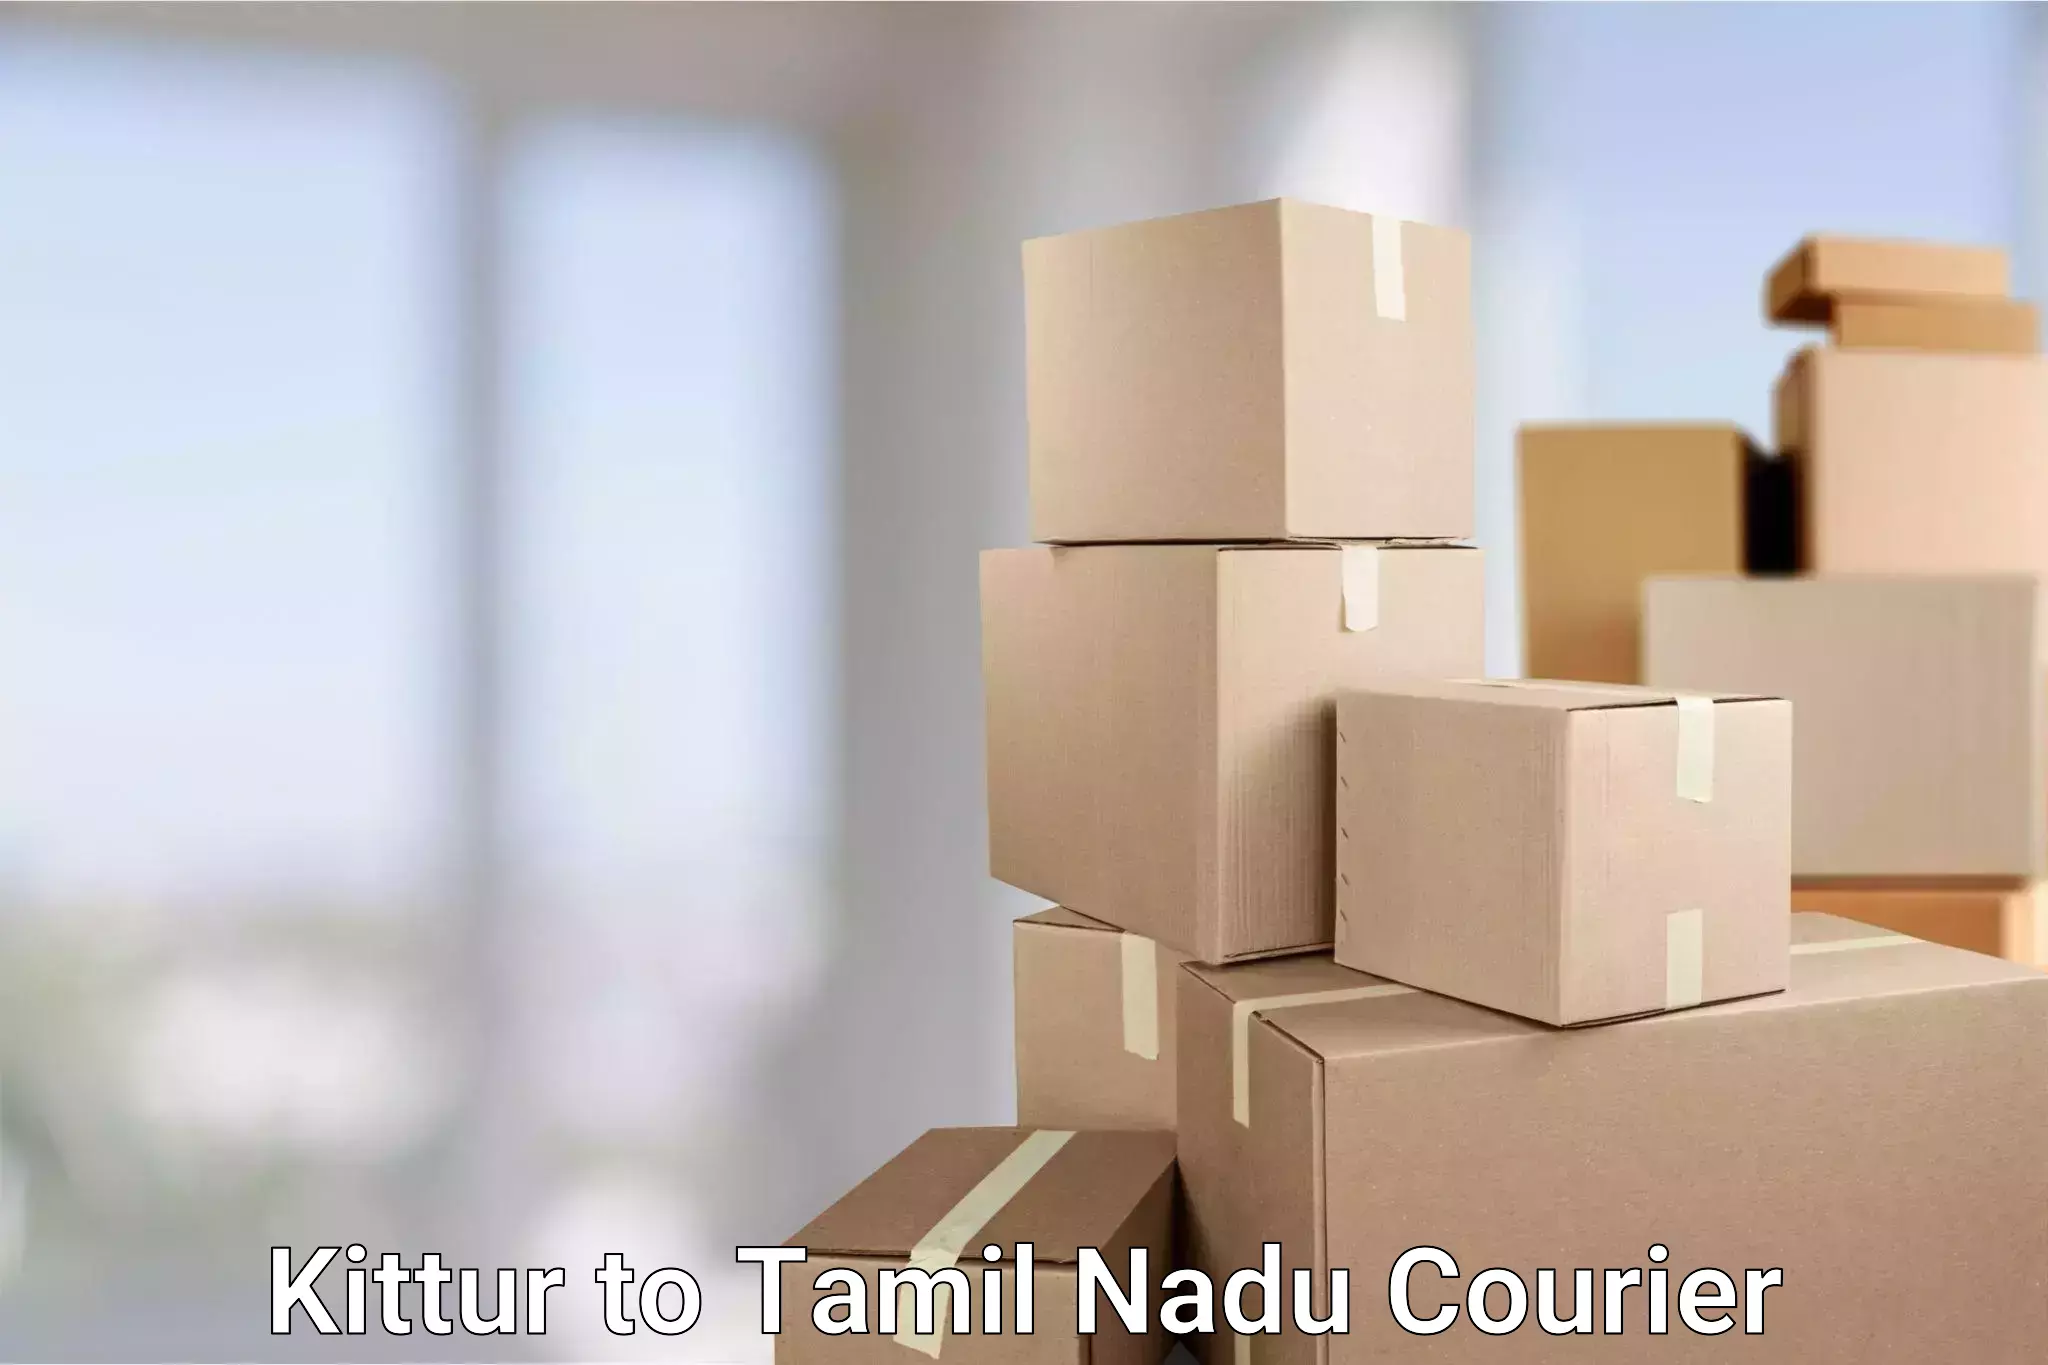 Reliable parcel services Kittur to Eraiyur